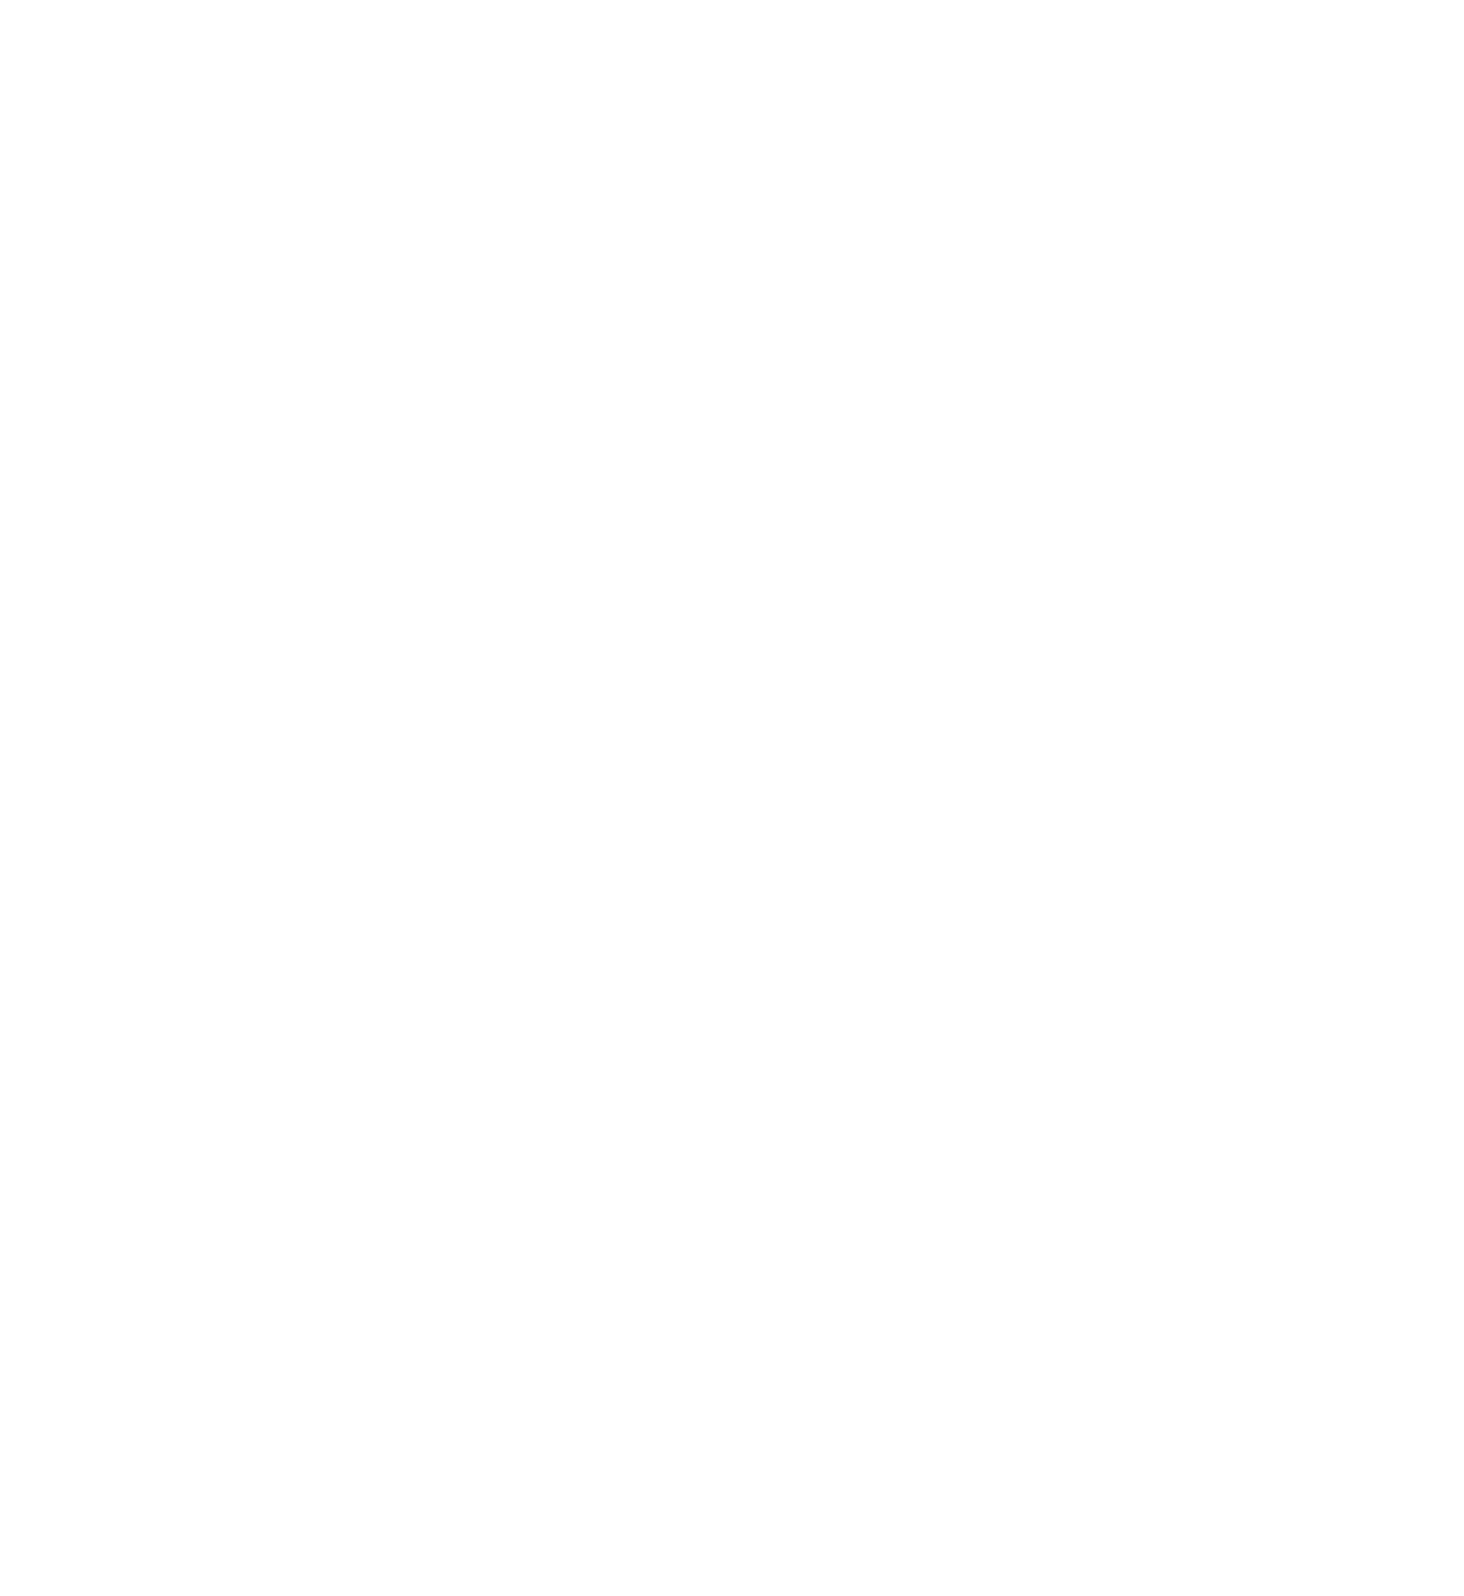 Horeca Vlaanderen | Audium | Audiovisuele producties en verhuur op broadcastmarkt Ranst